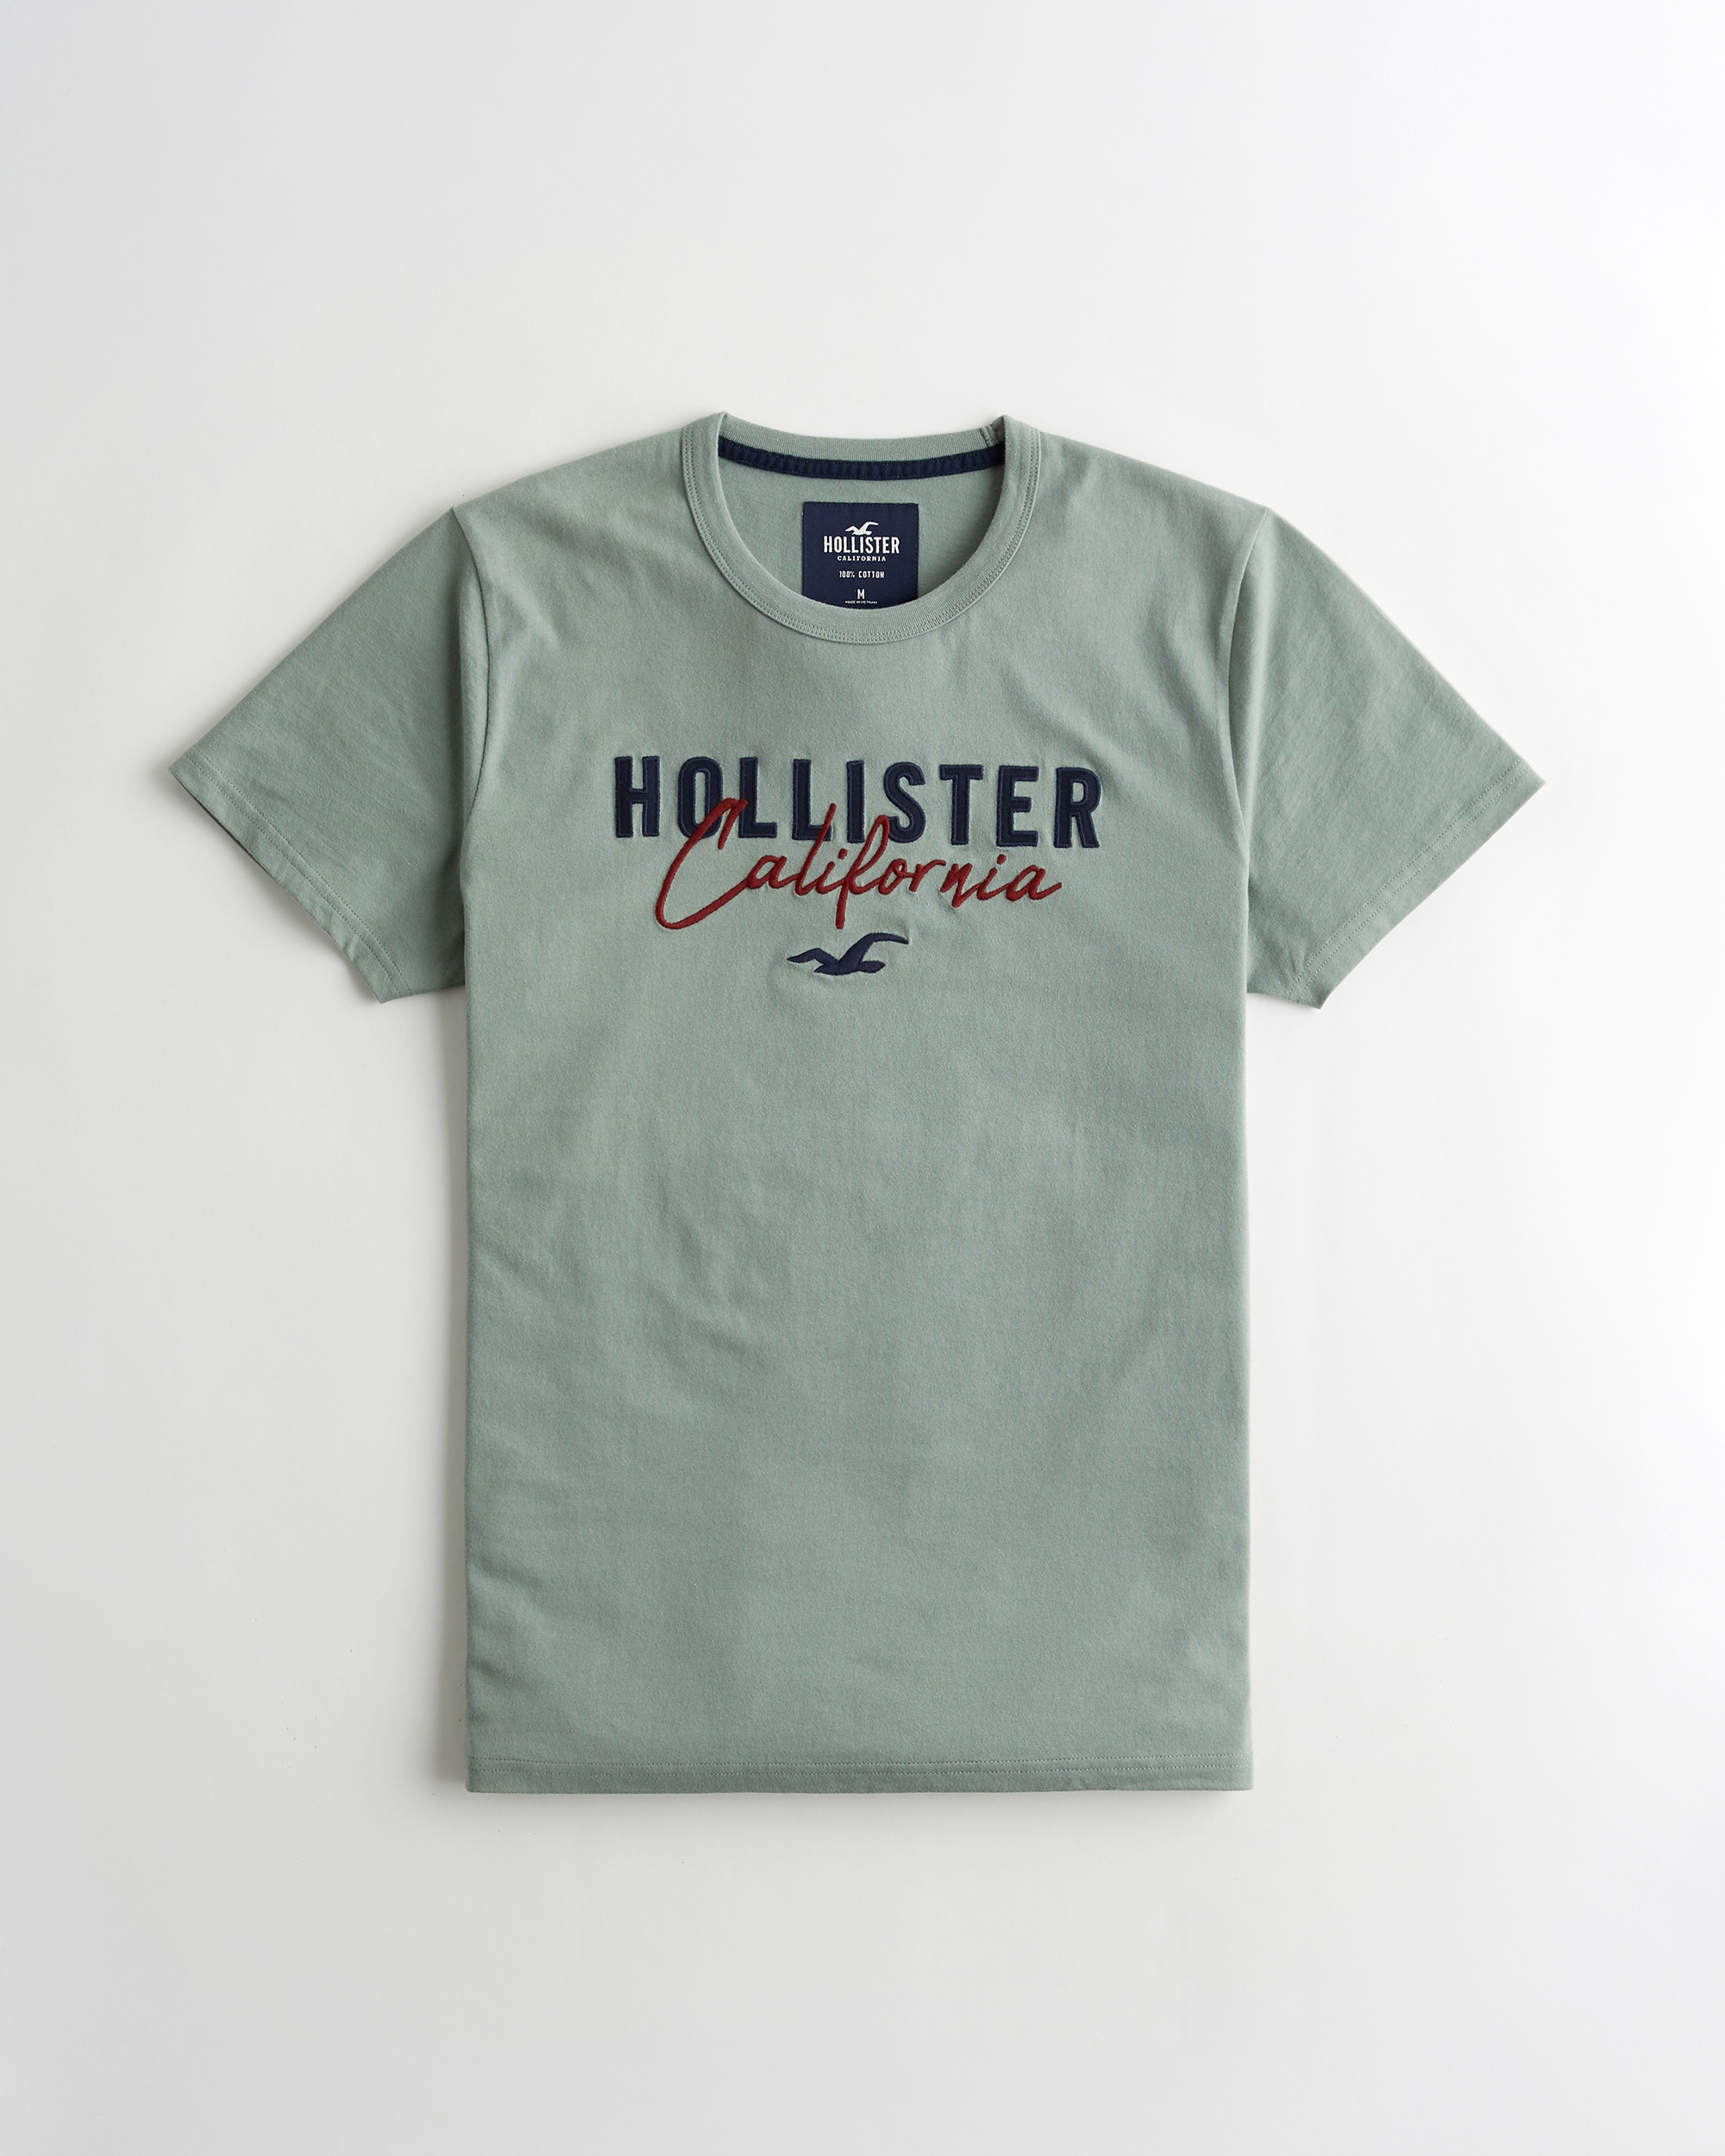 hollister california shirt